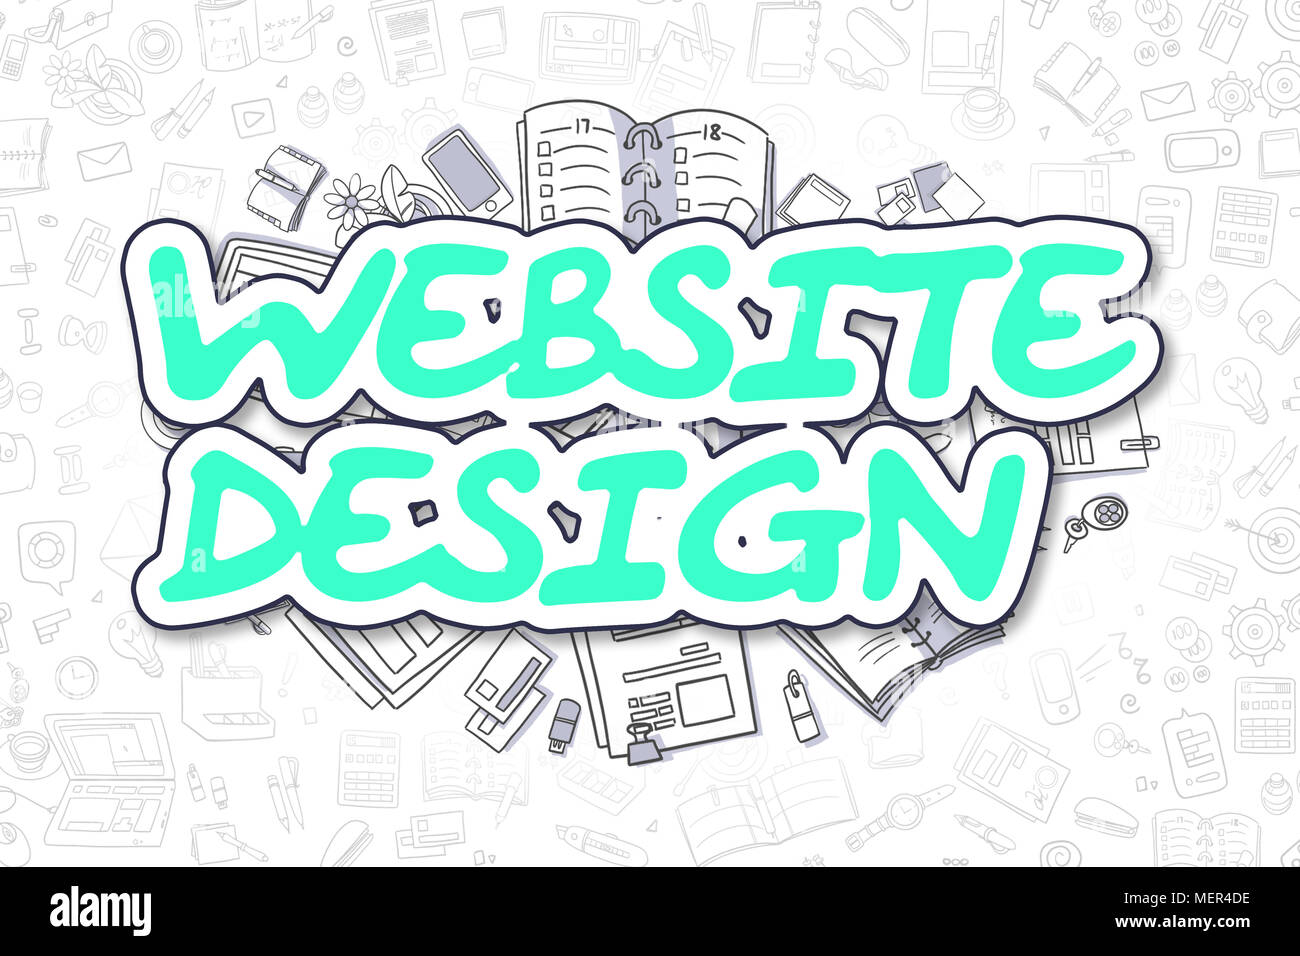 Diseño web - Cartoon texto de color verde. Concepto de negocio. Foto de stock